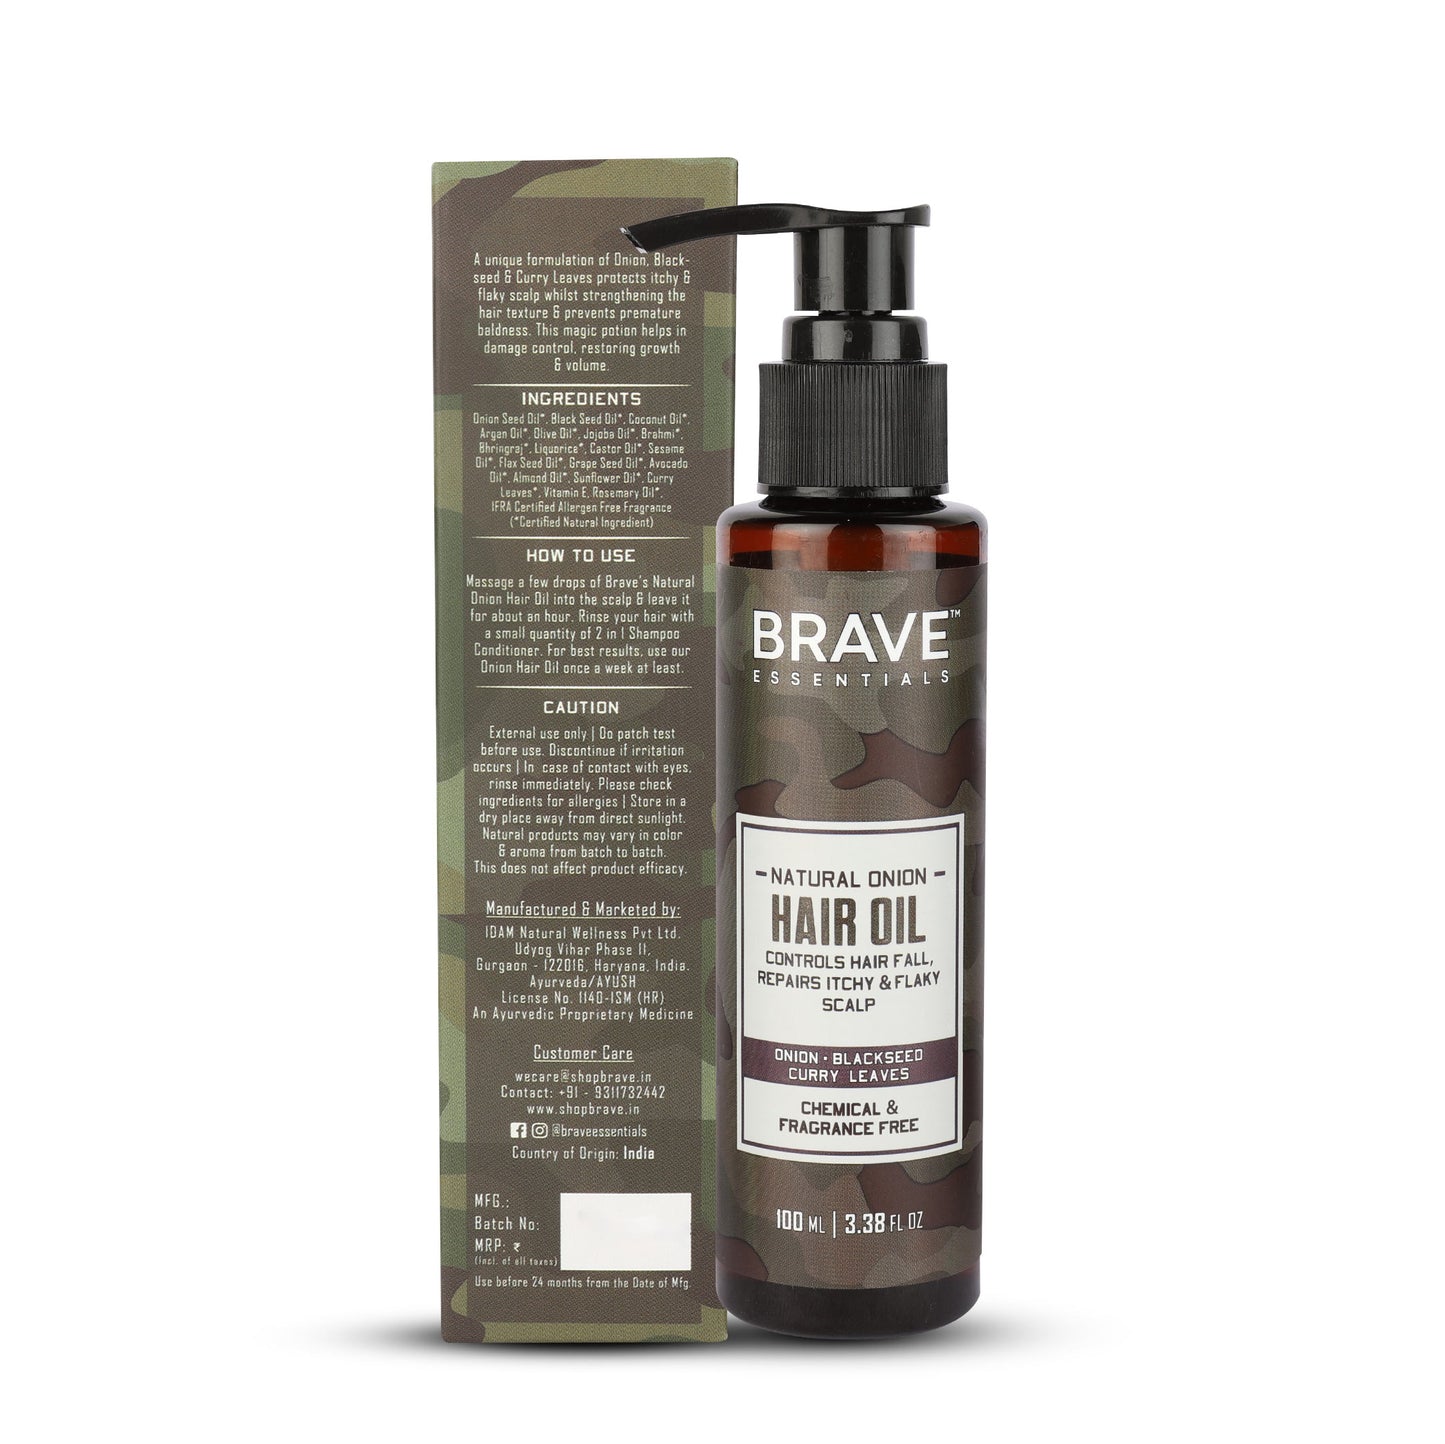 Brave Essentials - Natural Onion Hair Oil, 100ml